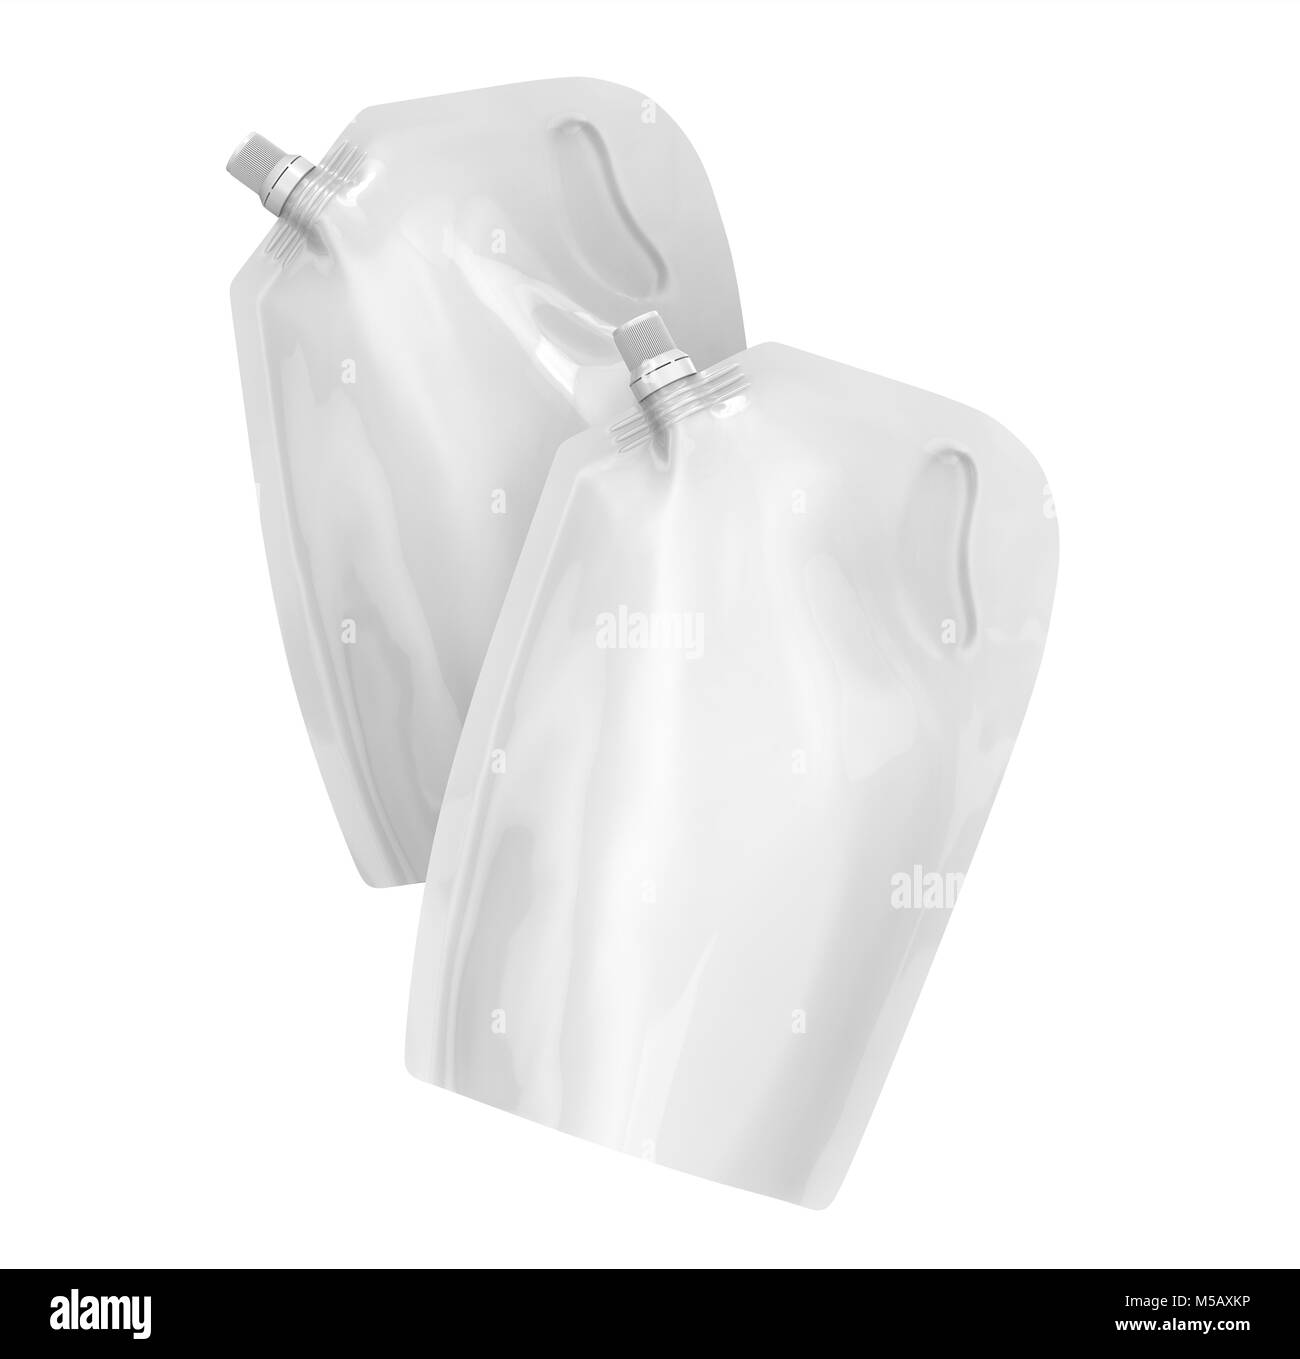 Waschmittel refill Paket, 3d-render Beuteltasche mockup mit Deckel, die in der Luft schweben eingestellt Stockfoto